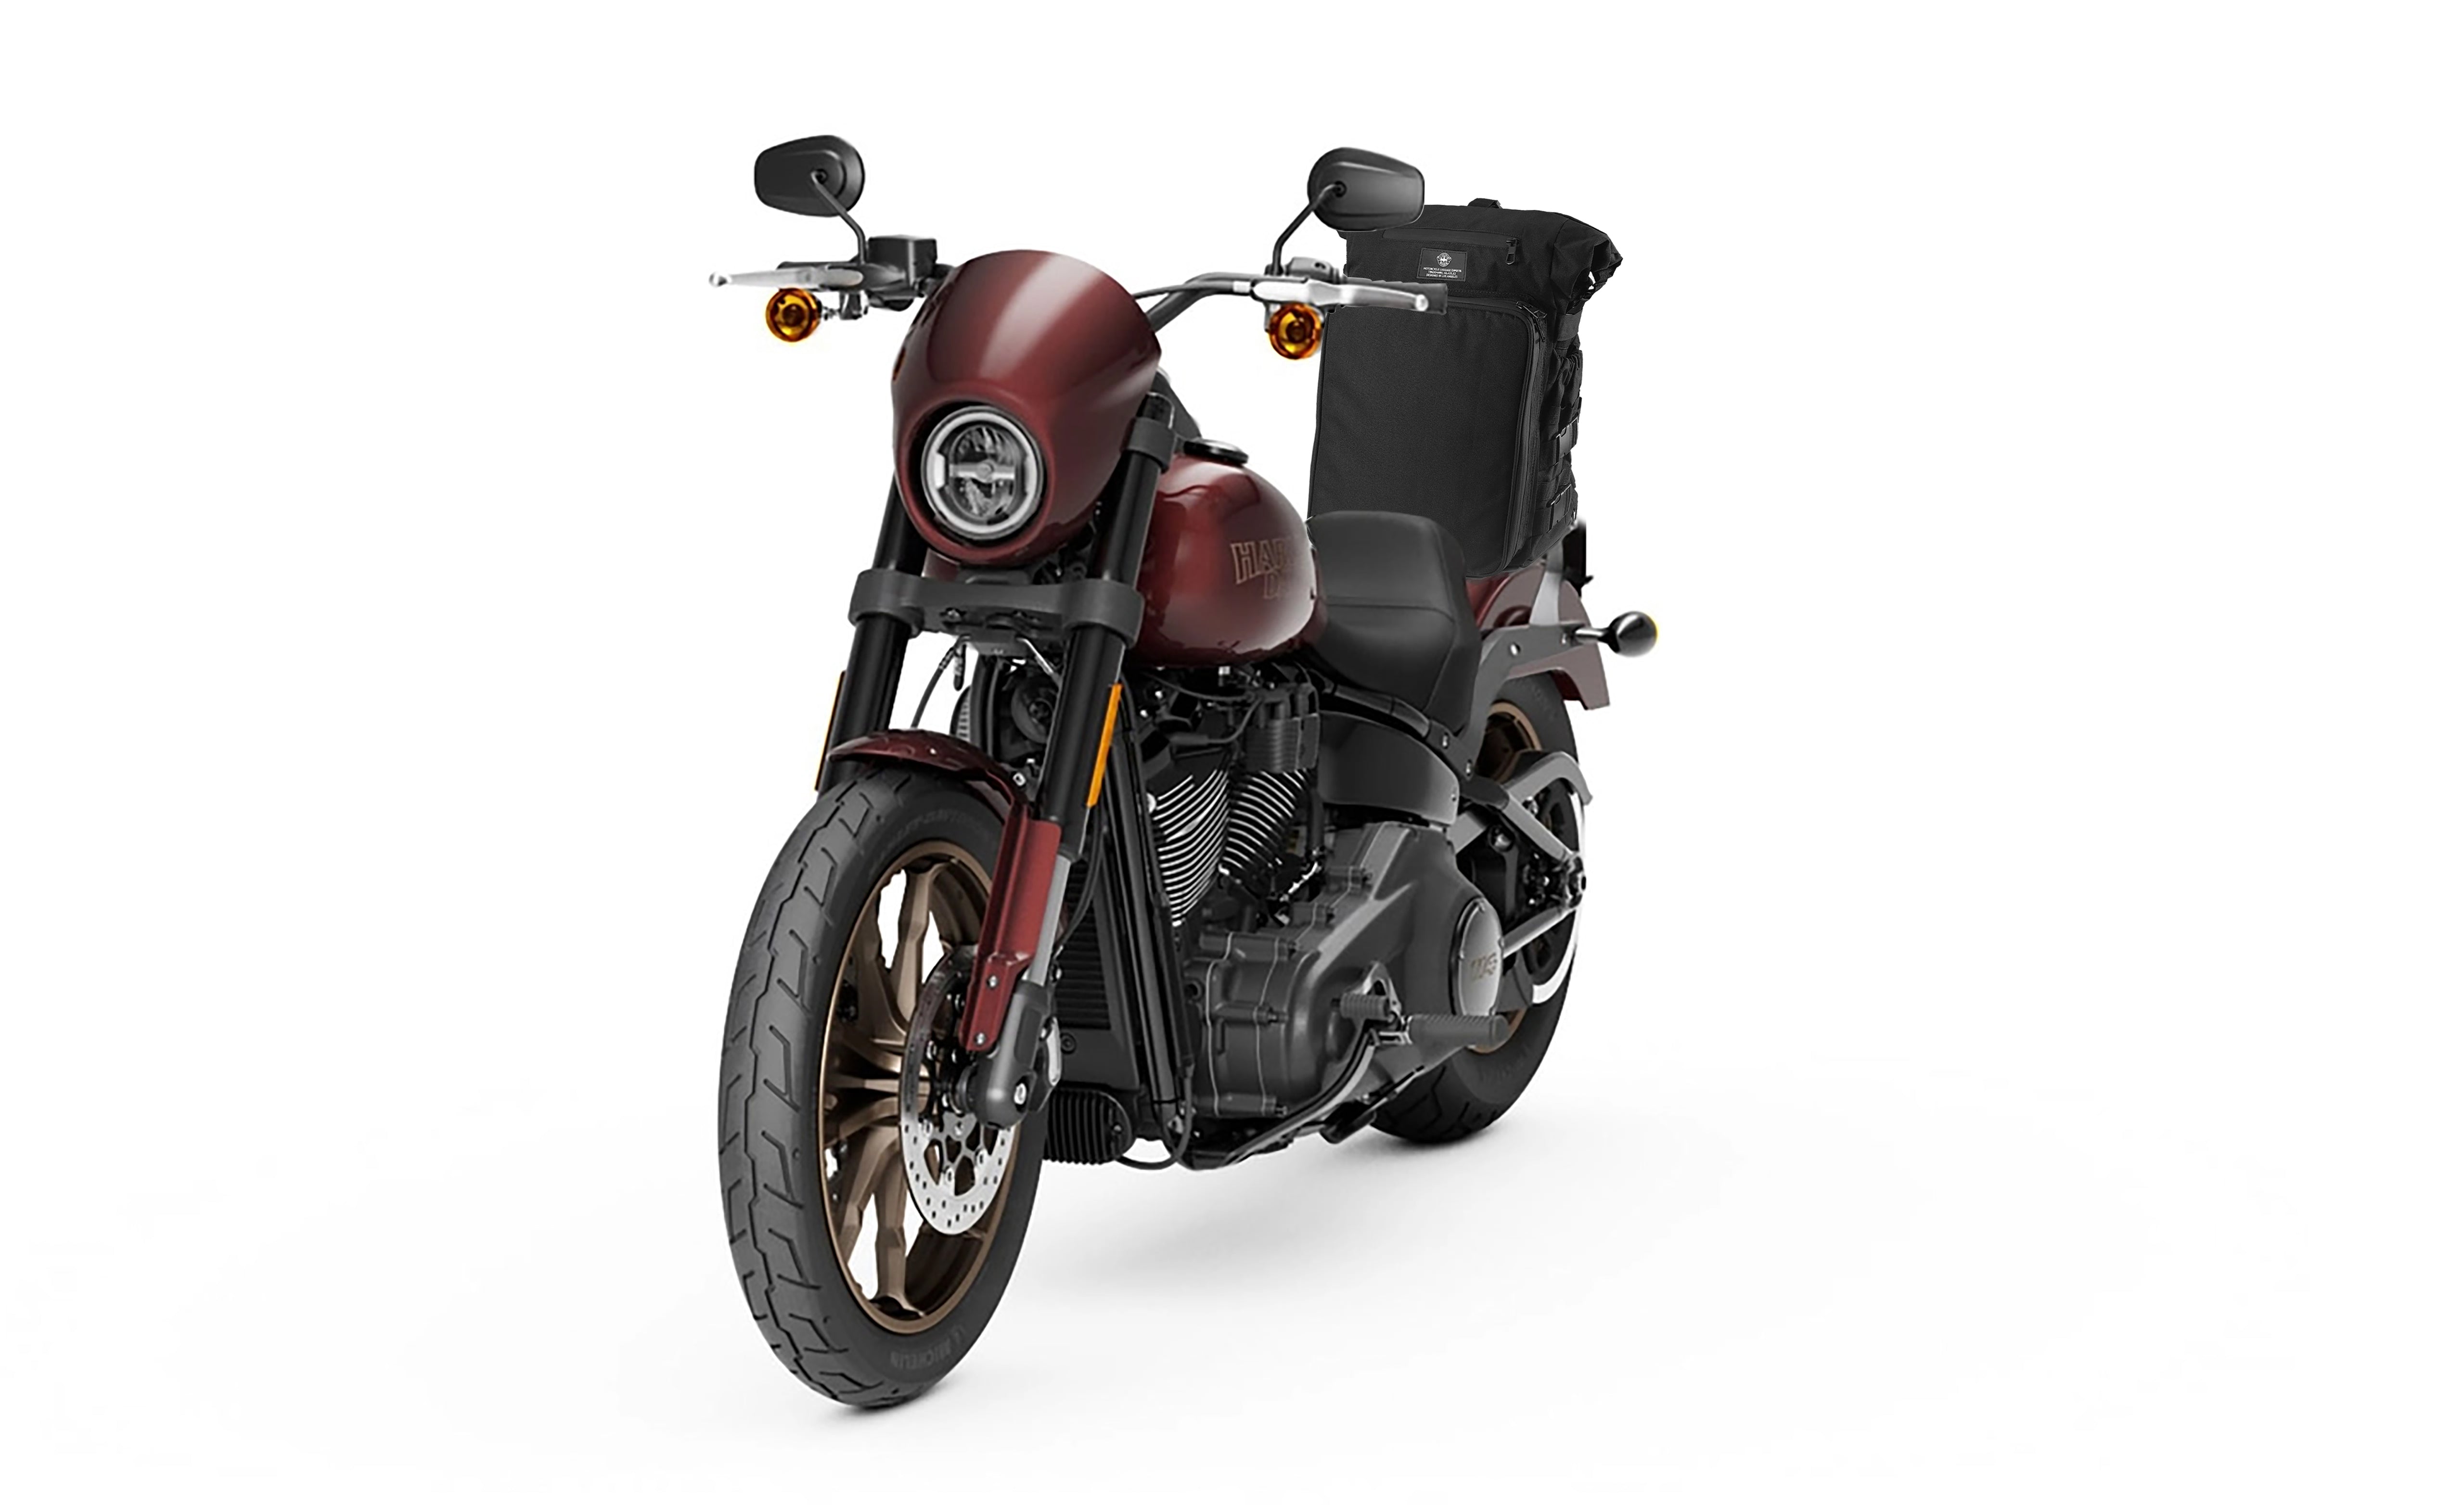 Viking Renegade XL Motorcycle Tail Bag for Harley Davidson Bag on Bike View @expand